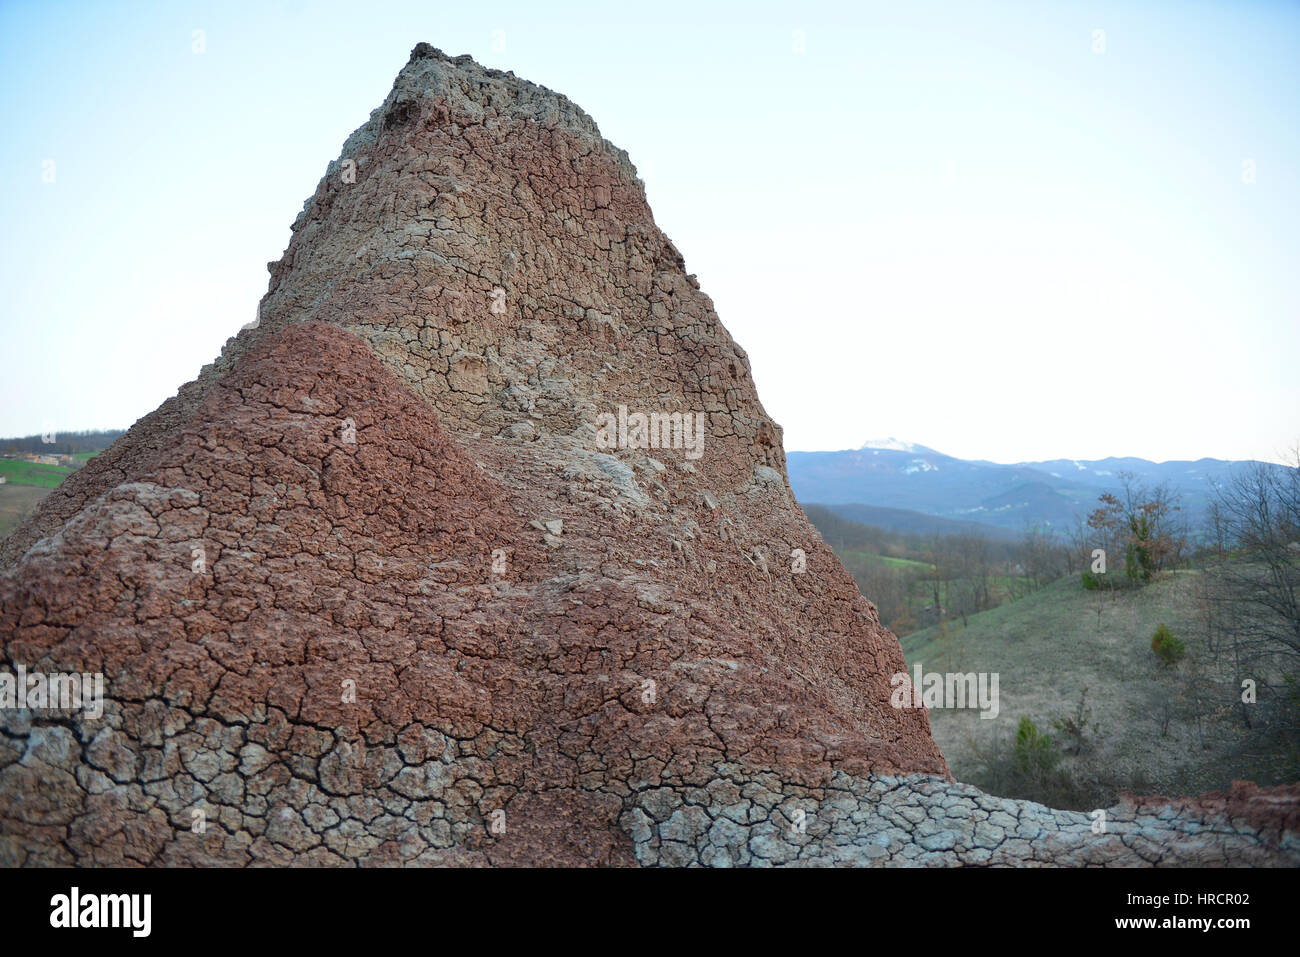 Badlands von Lehmboden im oberen Tal des Flusses Secchia Sassuolo Keramikproduktion Bereich Stockfoto